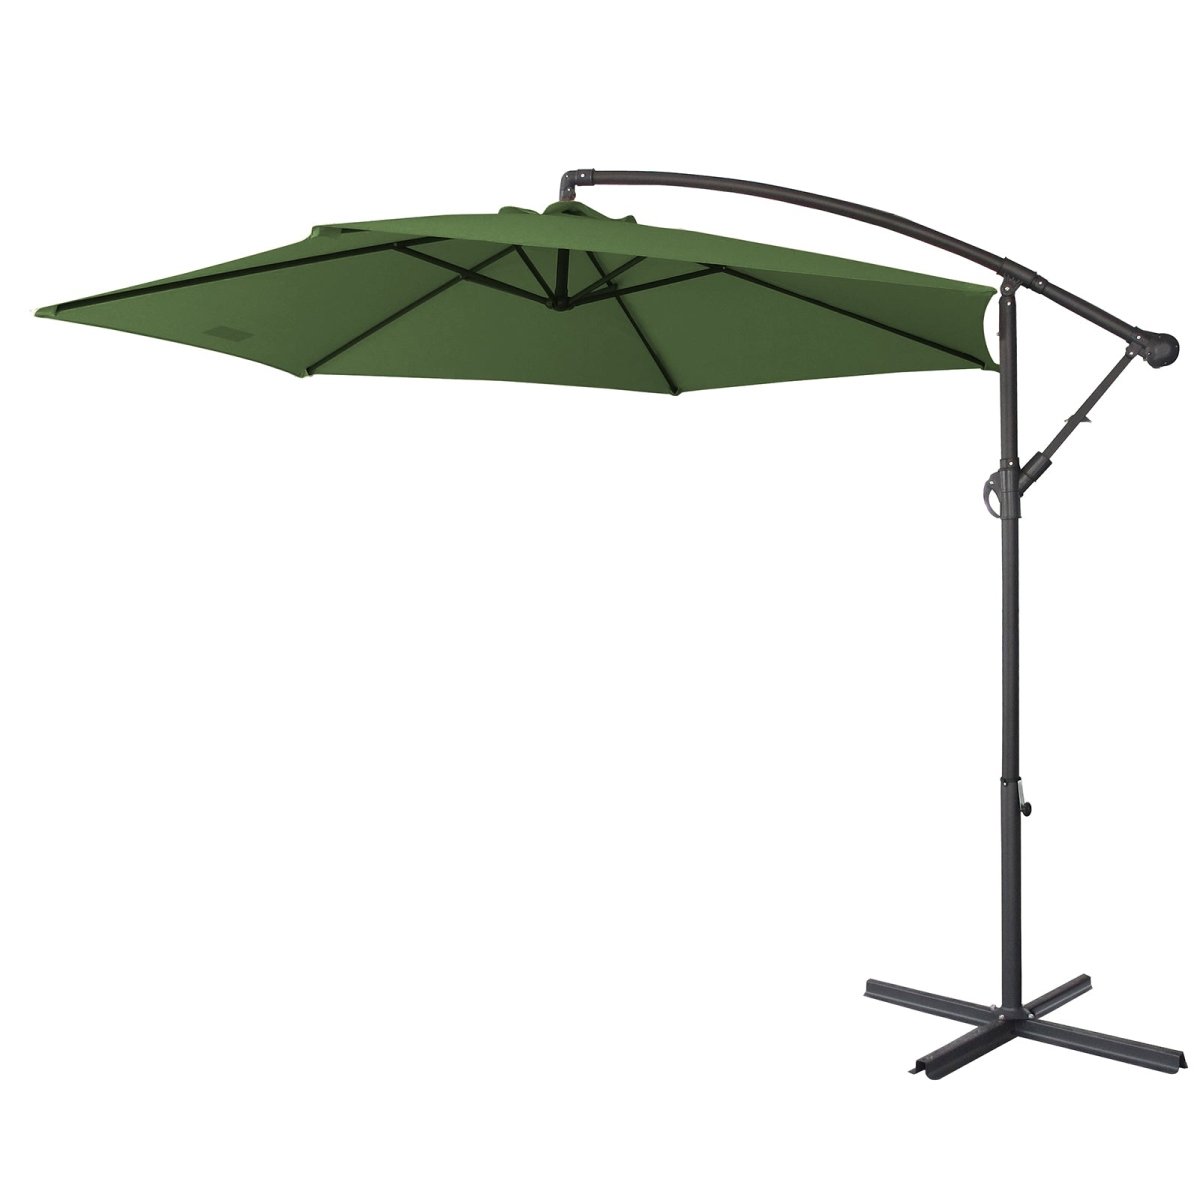 Milano 3M Outdoor Umbrella Cantilever With Protective Cover Patio Garden Shade - Green - Outdoor Immersion